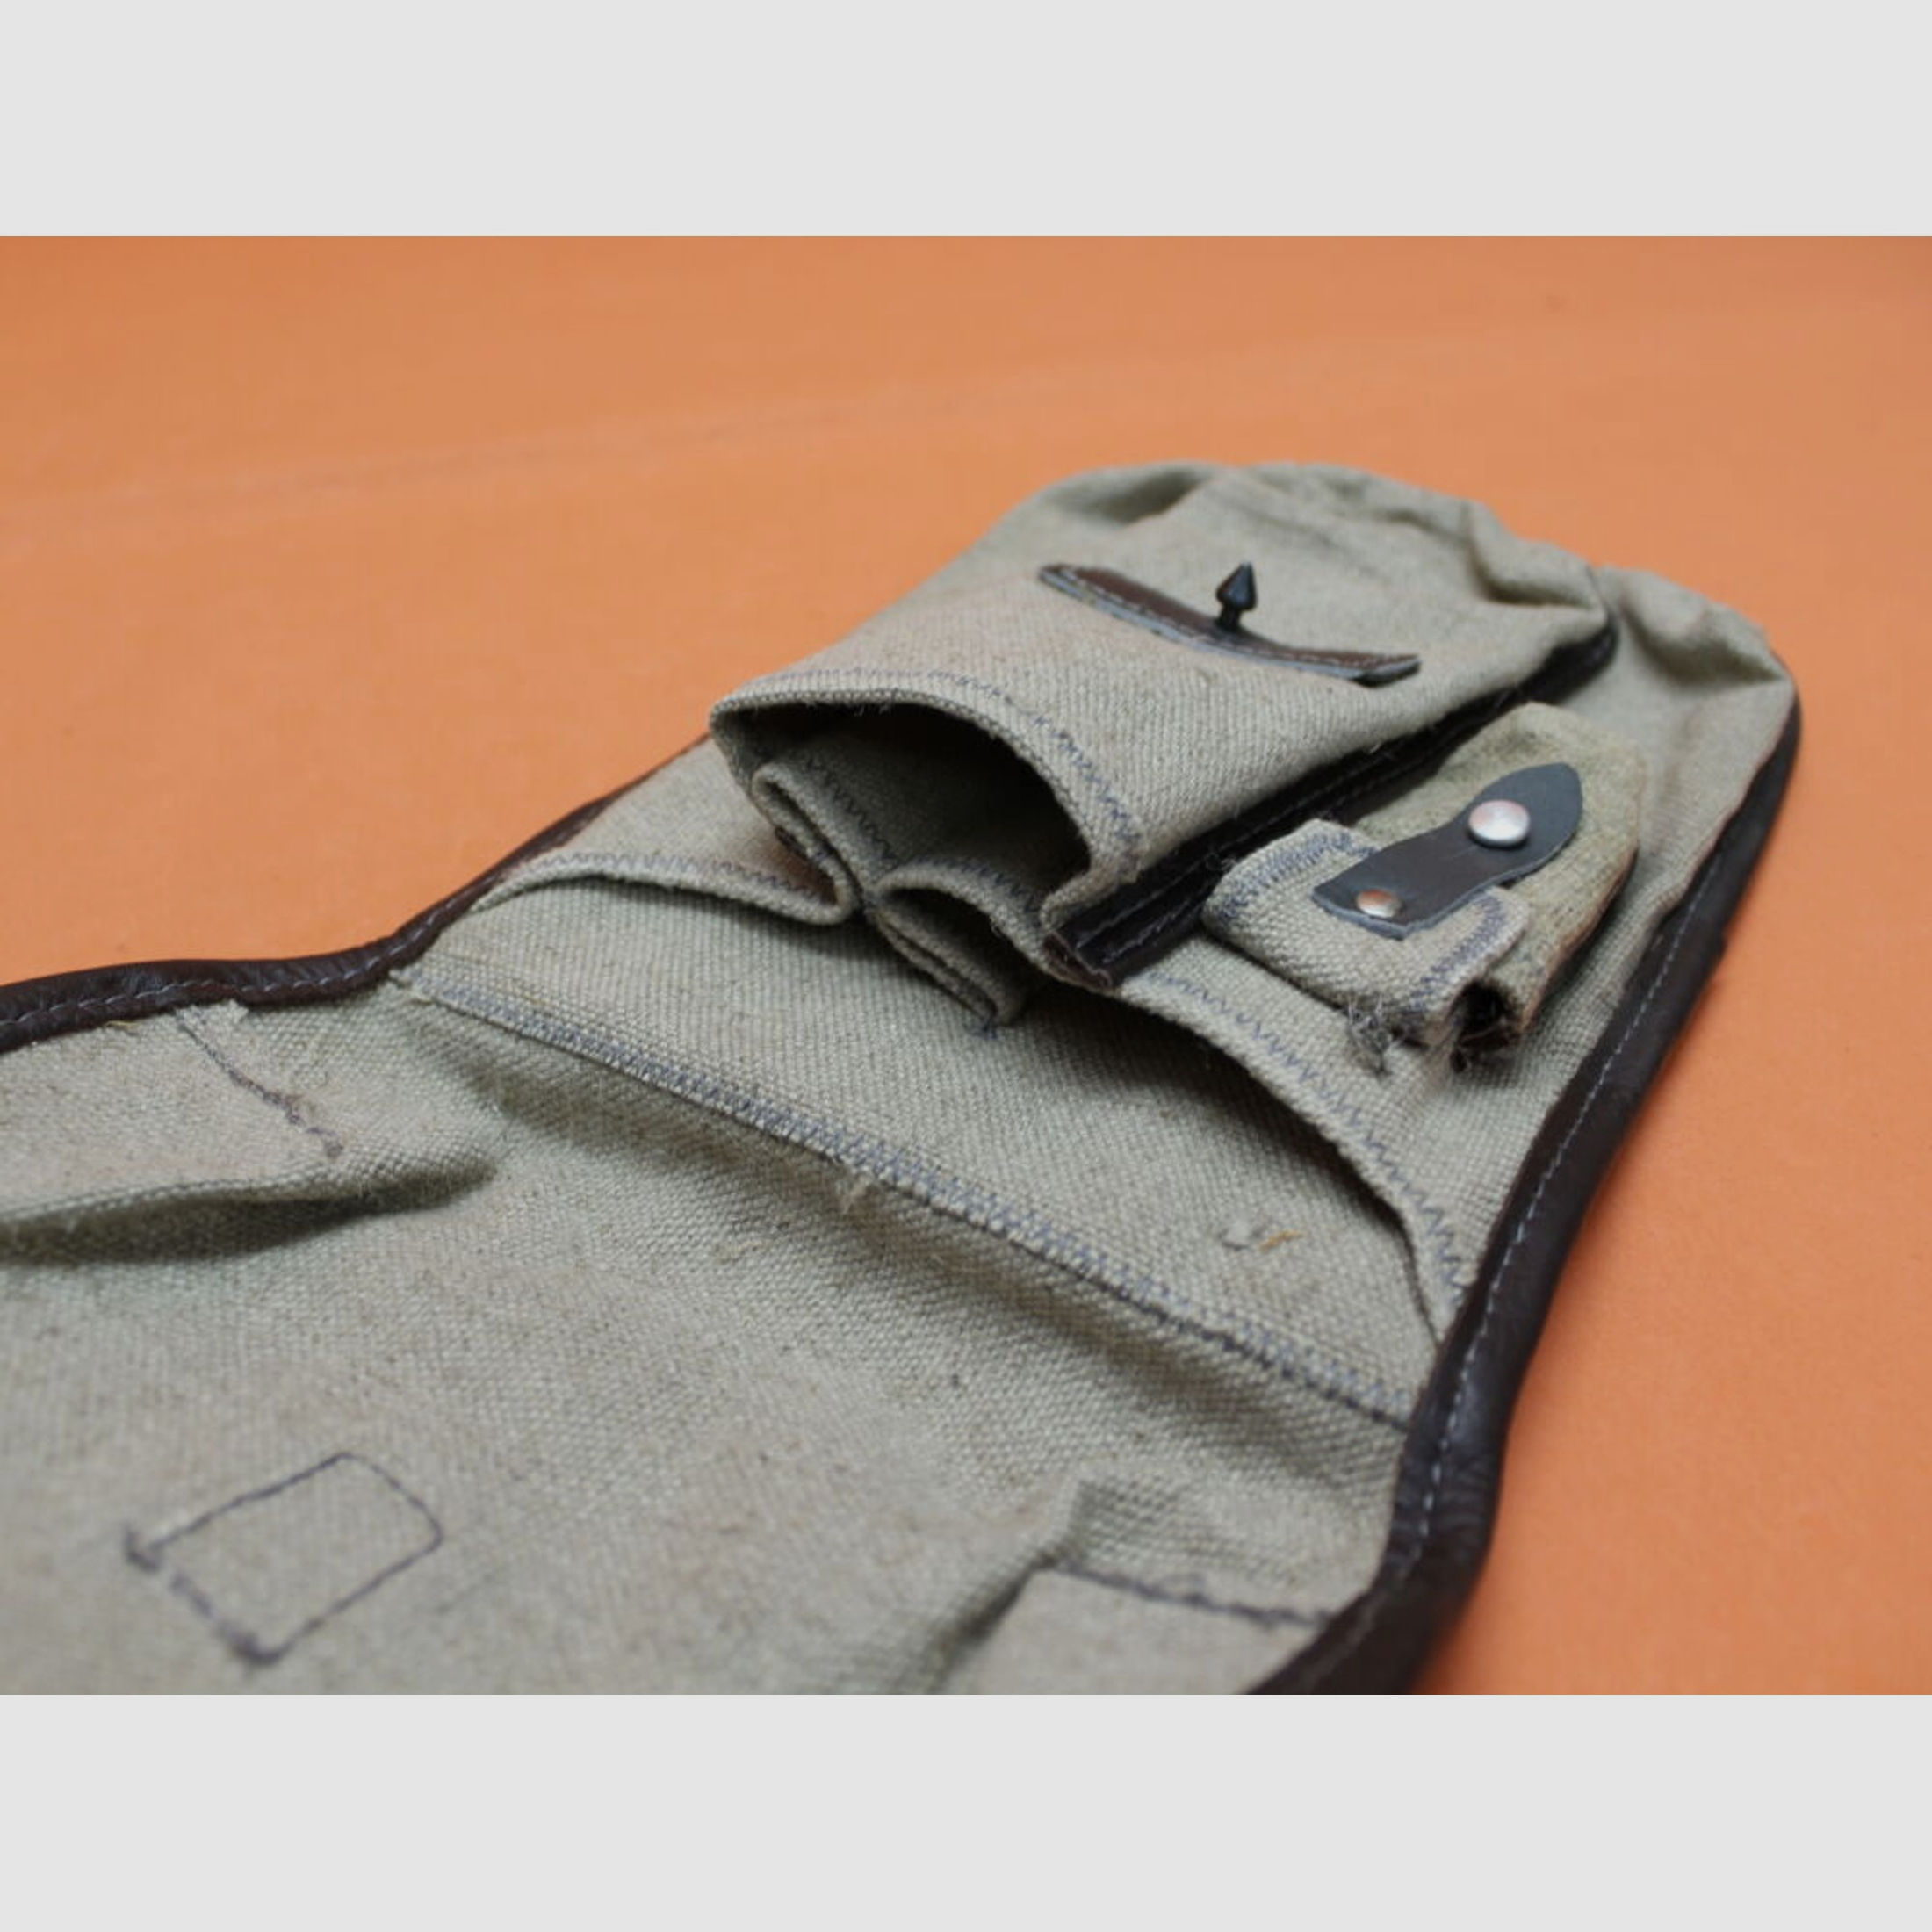 NVA SURPLUS	 Kalashnikov AKM: Magazintasche DDR hellbeige für 3 Stück 30-Schuss Magazine (Exportfertigung). (SURPLUS neuwertig/ geringe Lagerspuren)